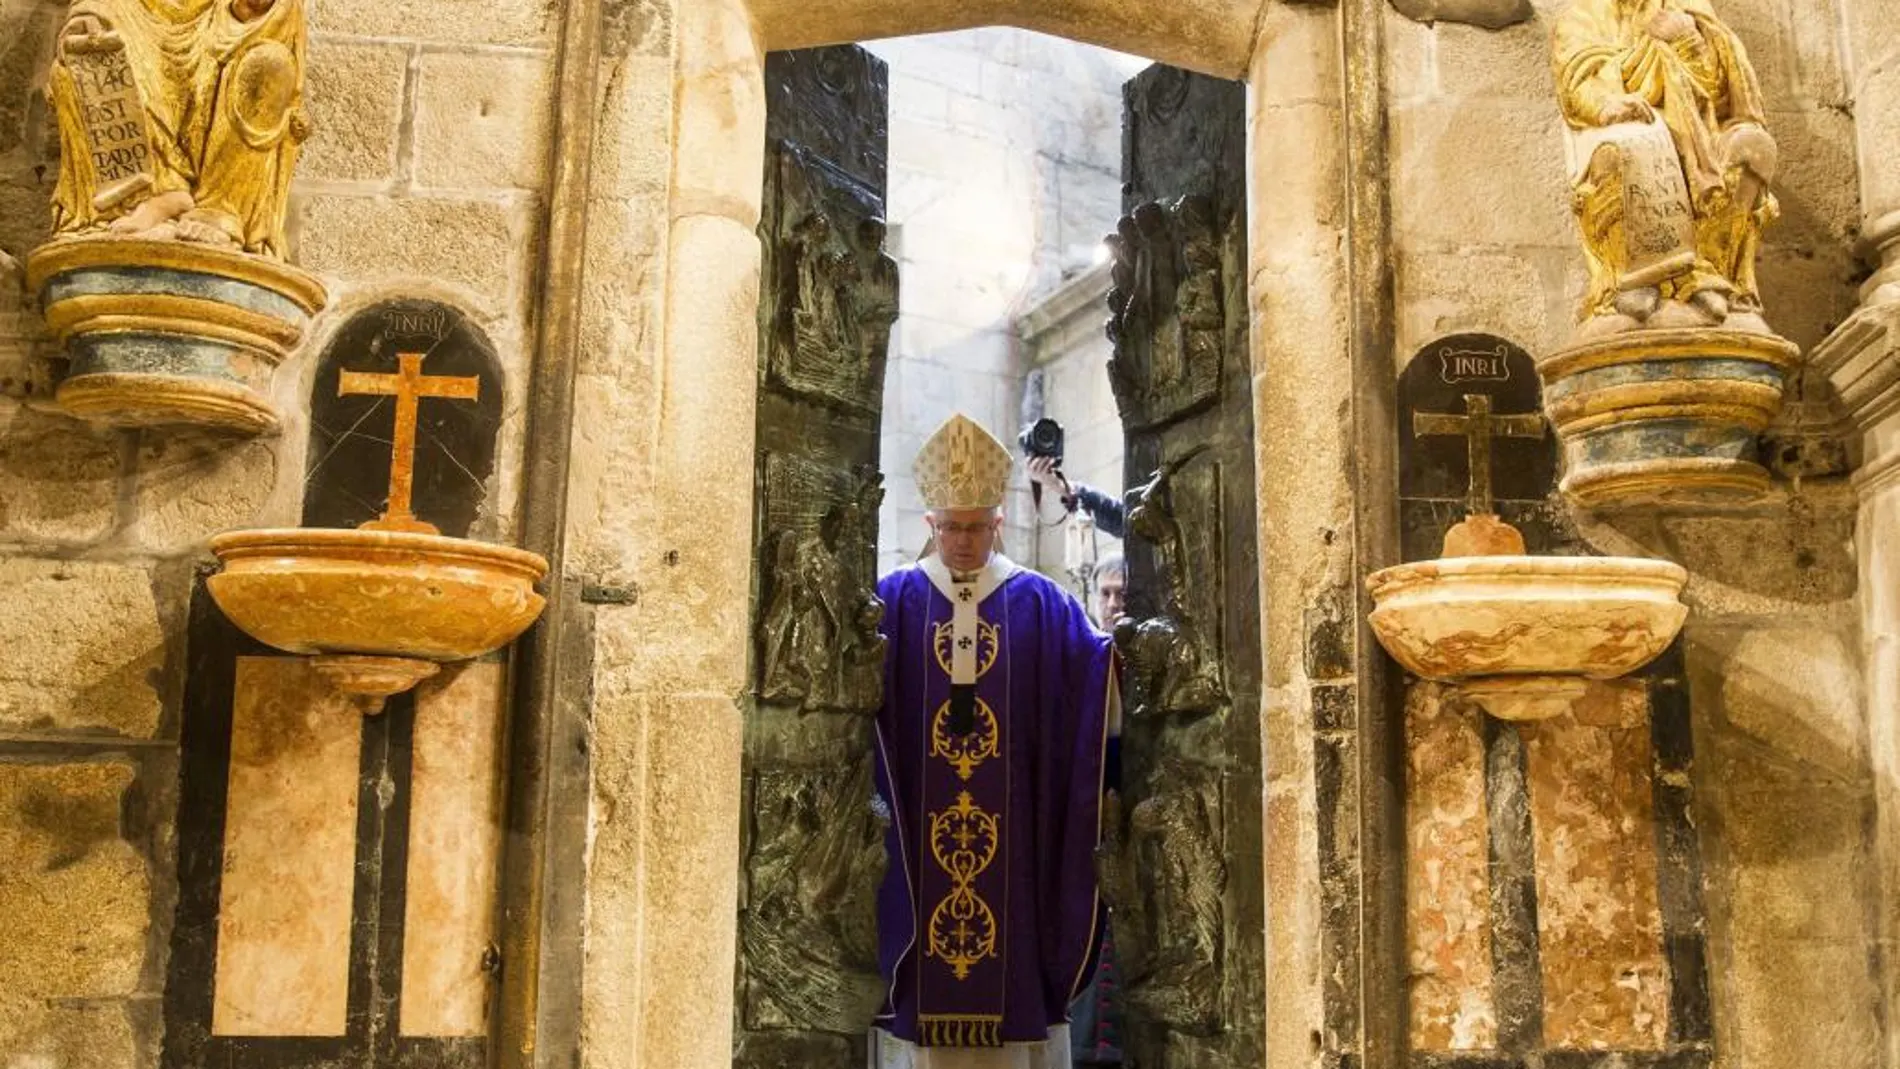 El arzobispo de Santiago Julián Barrio abre la Puerta de la Misericordia de la catedral de Santiago, nombre que recibirá la llamada Puerta Santa en el inicio del Año Jubilar Extraordinario.